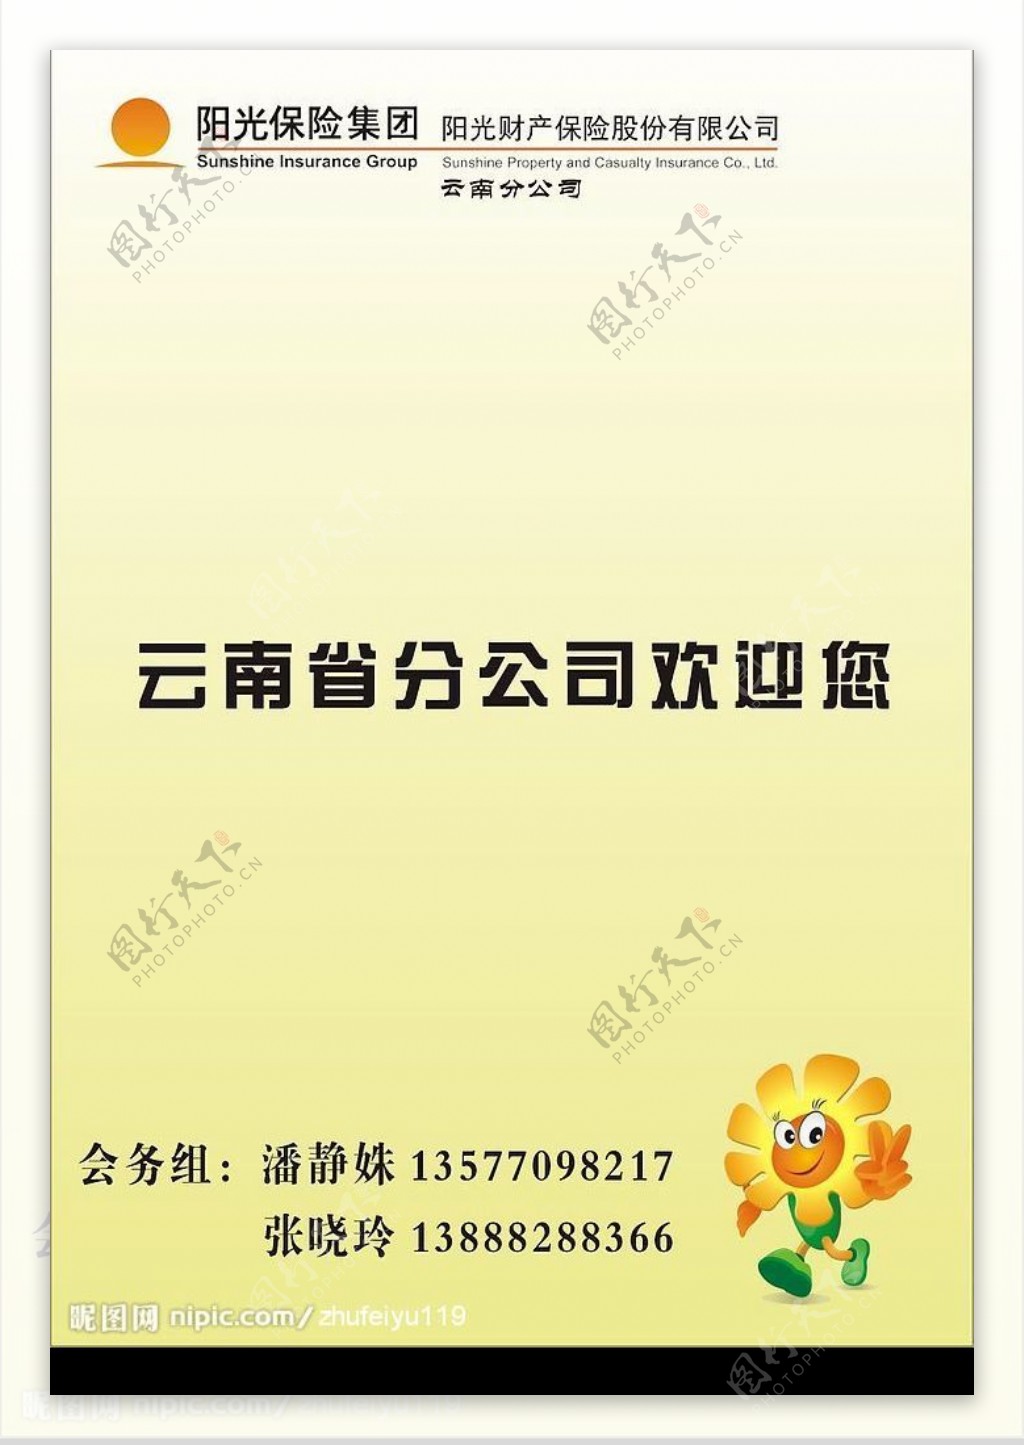 阳光保险欢迎卡标志为位图图片